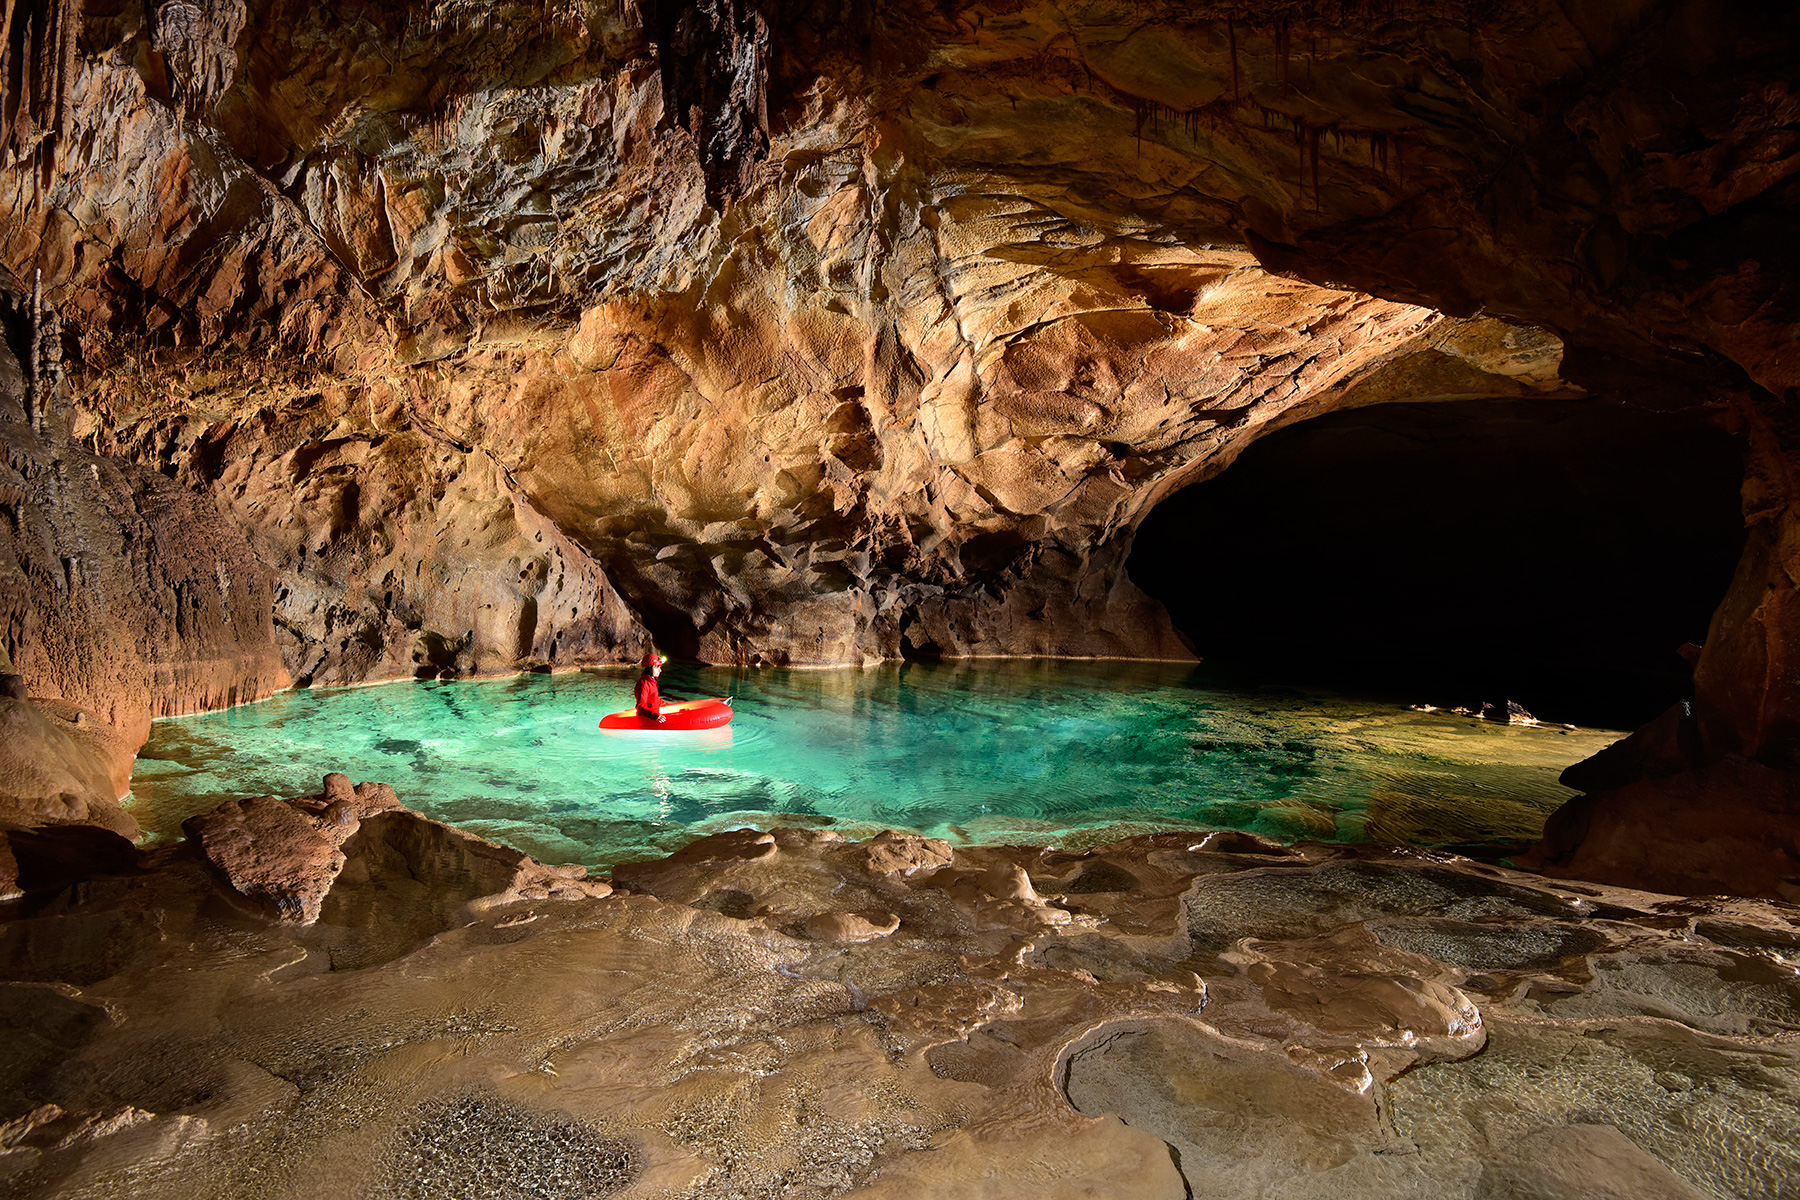 Krizna Jama (Slovénie) - Spéléo progressant en canot dans une rivière souterraine aux eaux vertes avec dépôts de calcite en premier plan